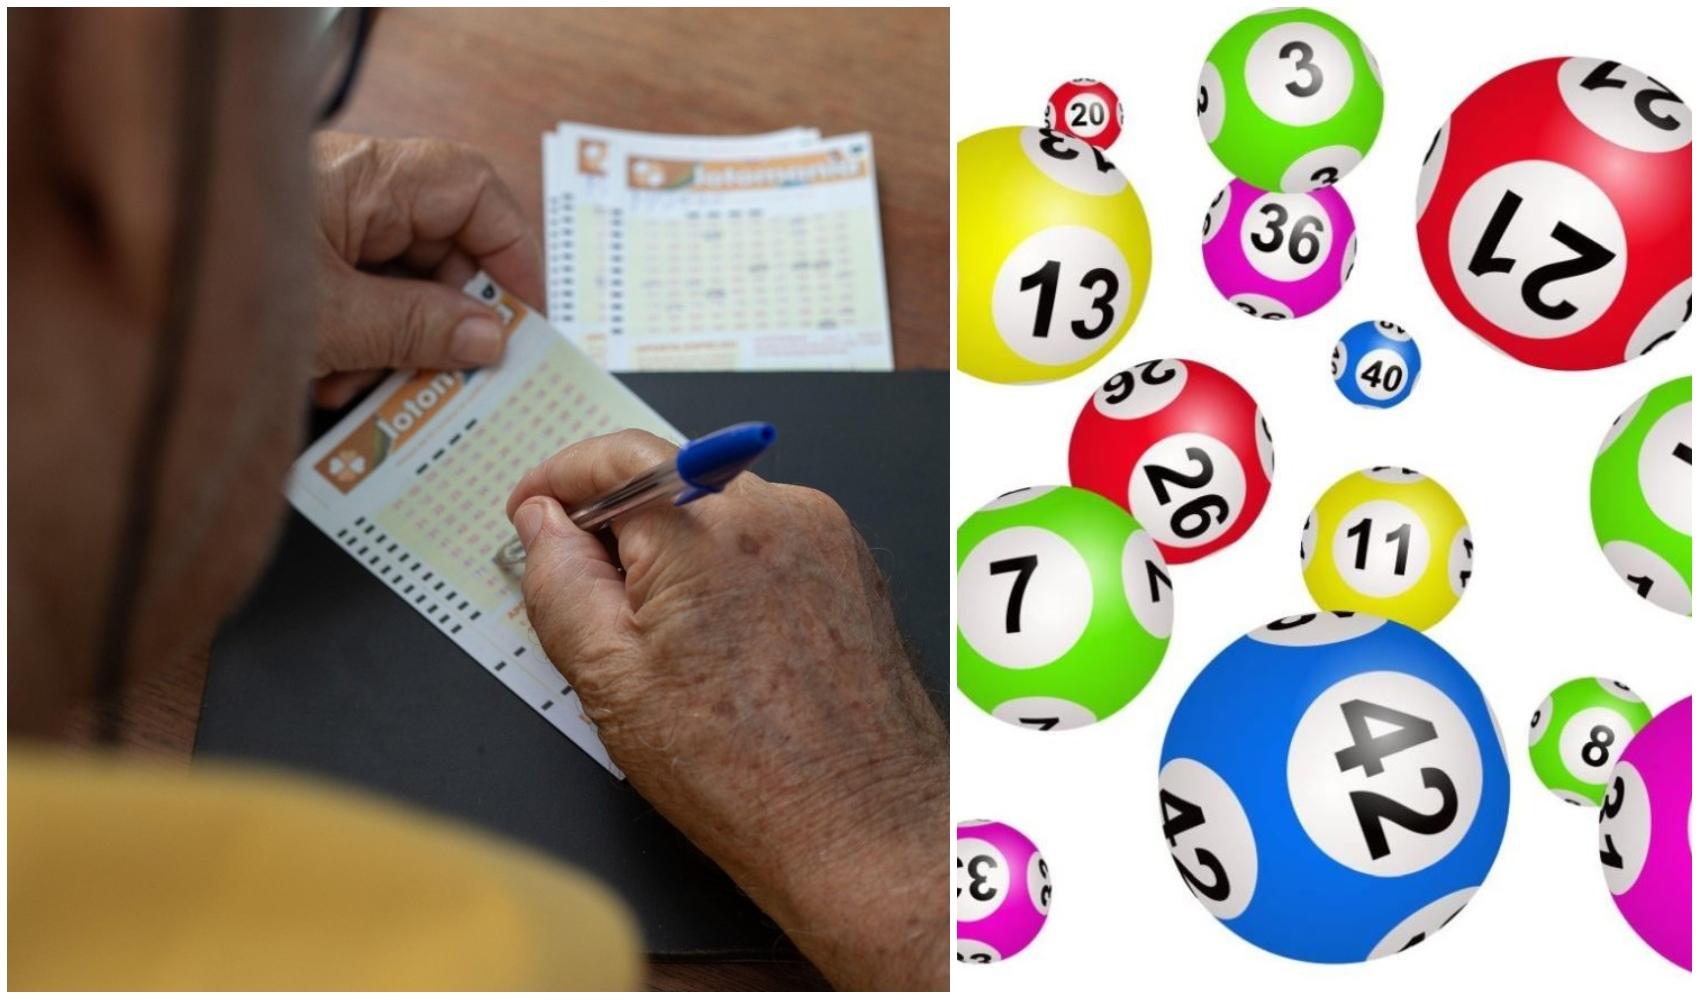 colaj foto cu o persona acare joaca la loto si imagine cu bile cu numere folosite la jocul de loto